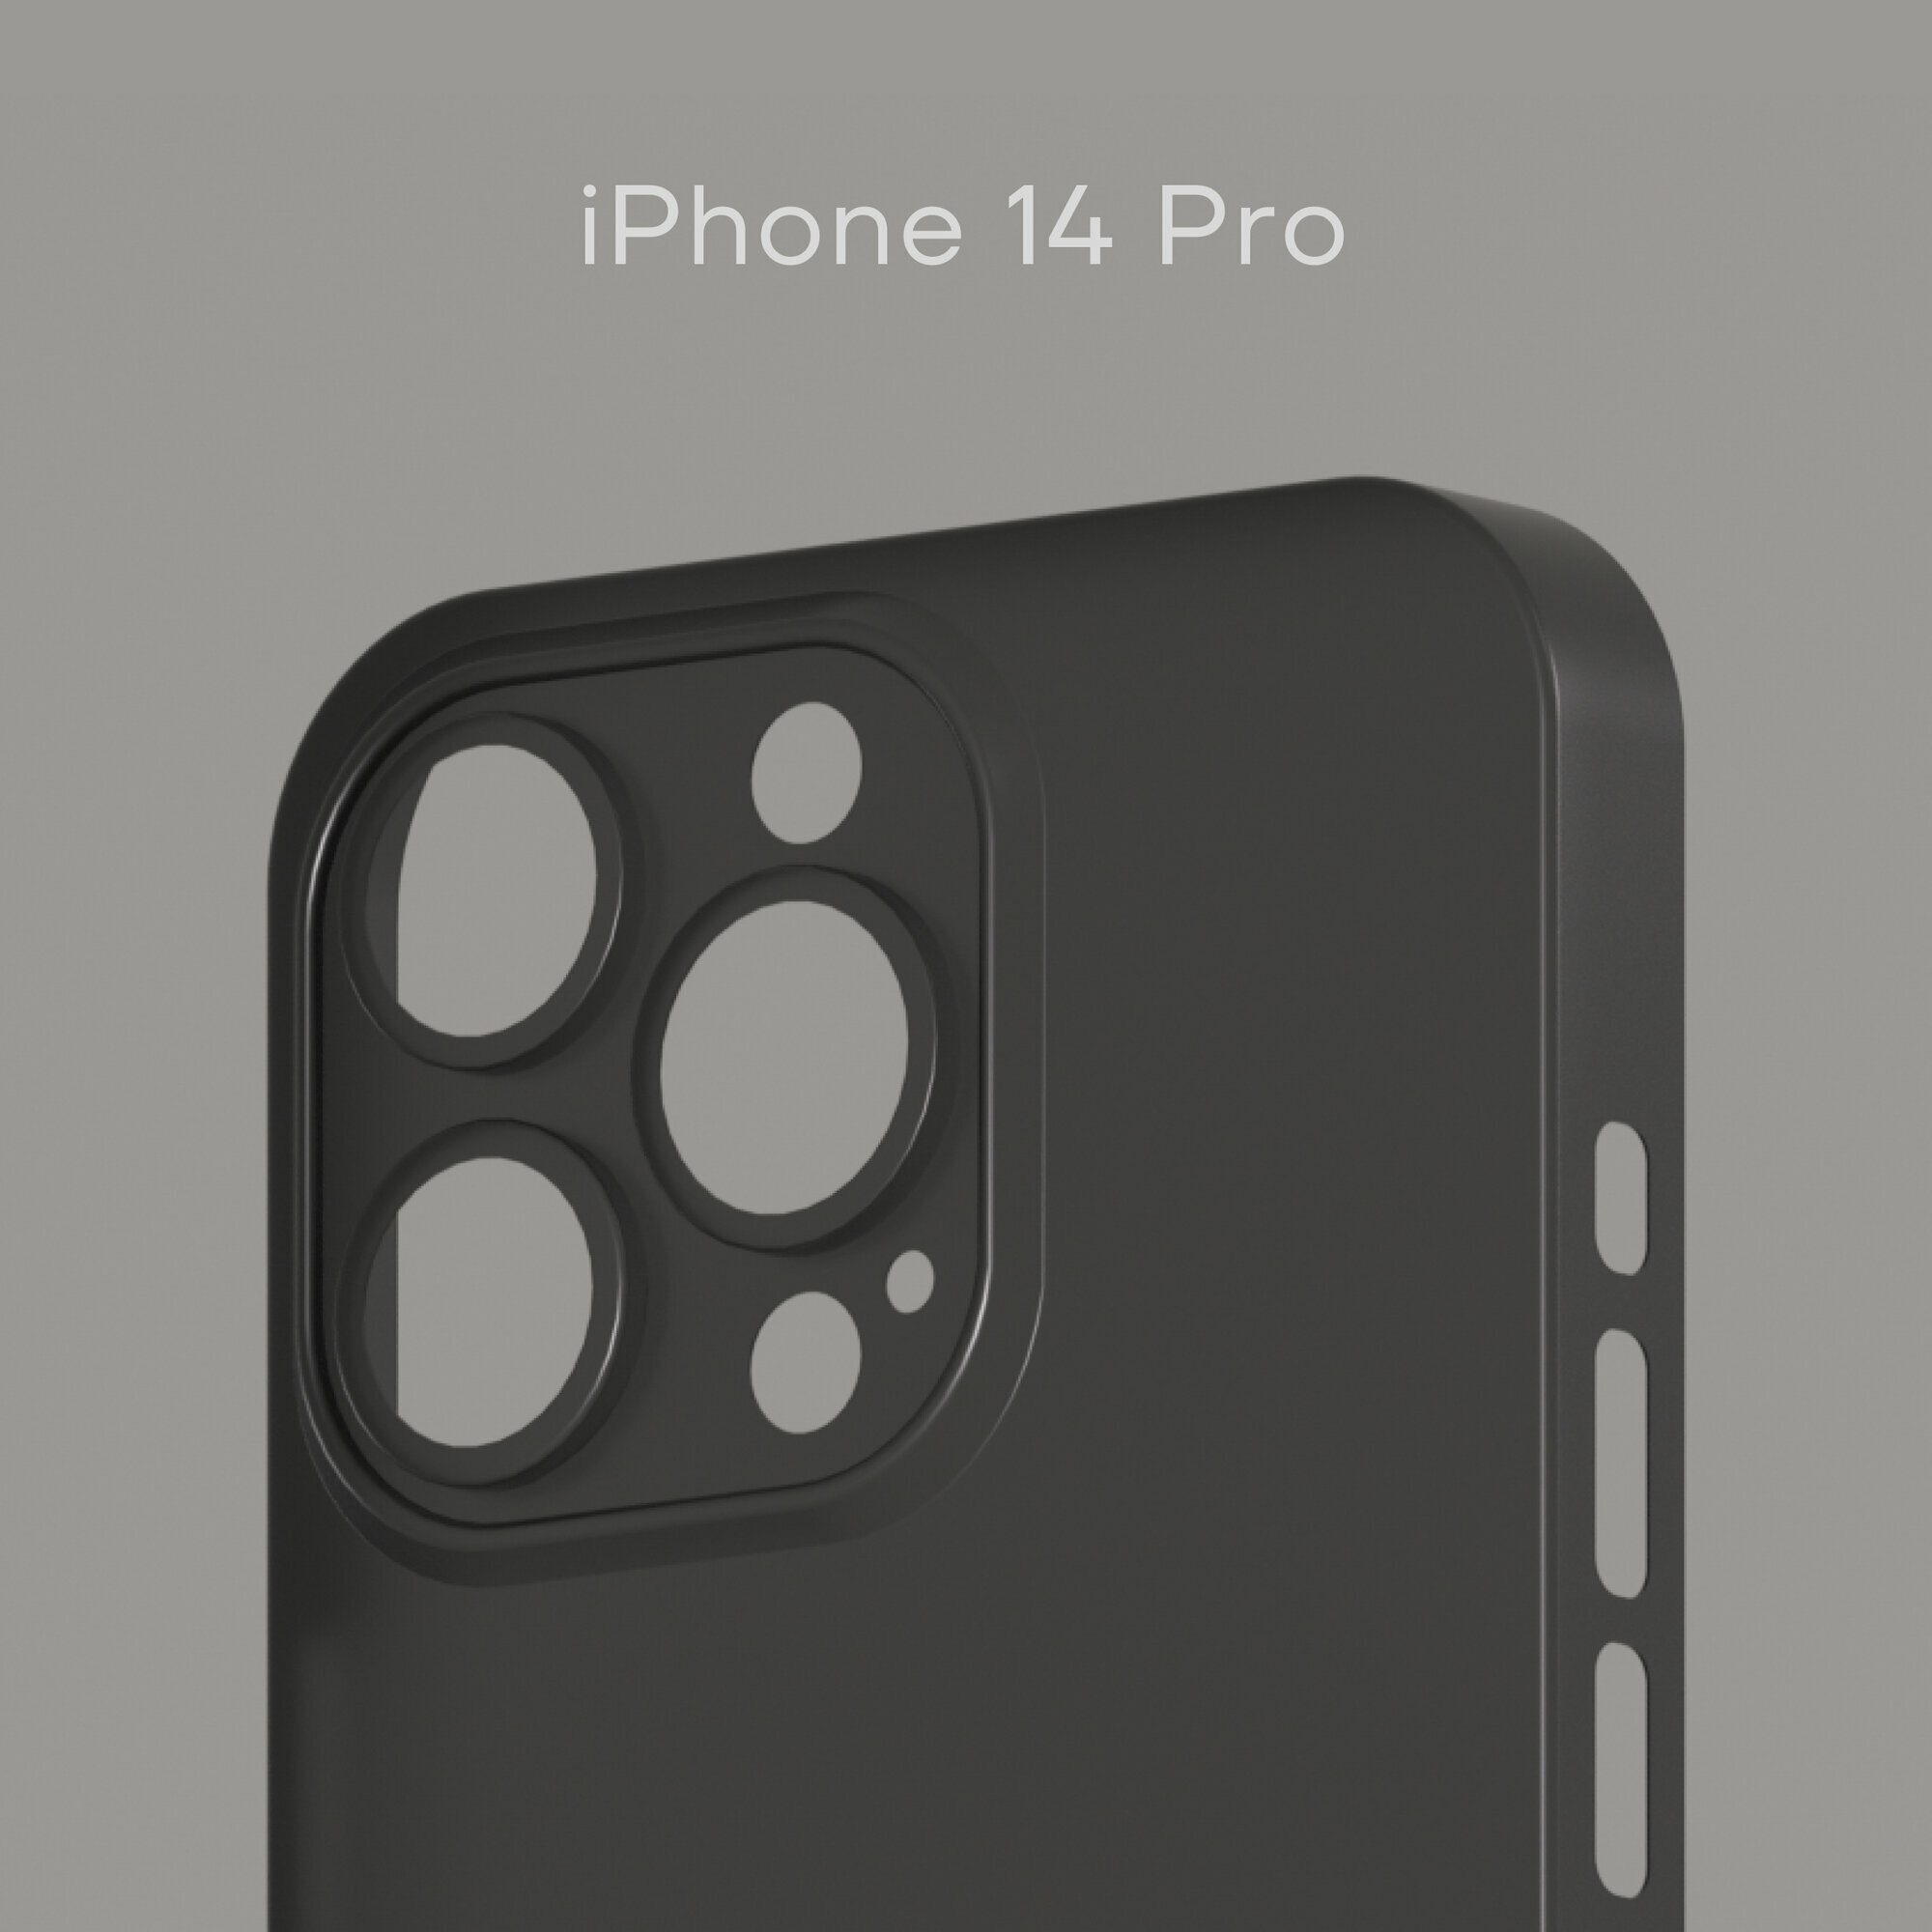 Тонкий чехол Уголок Air Case для iPhone 14 Pro / Айфон 14 Про толщиной 0,3 мм, черный, матовый, пластиковый